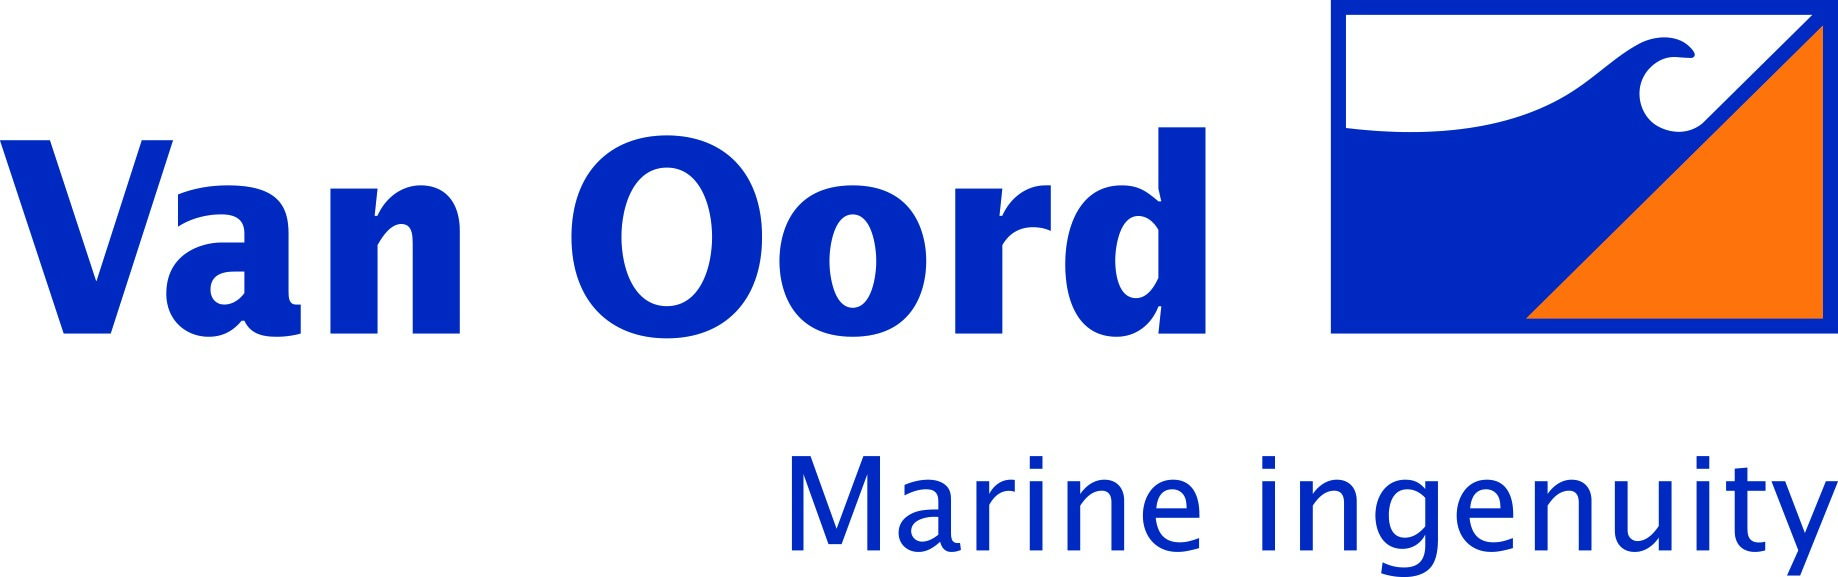 Van Oord Offshore Wind Germany GmbH